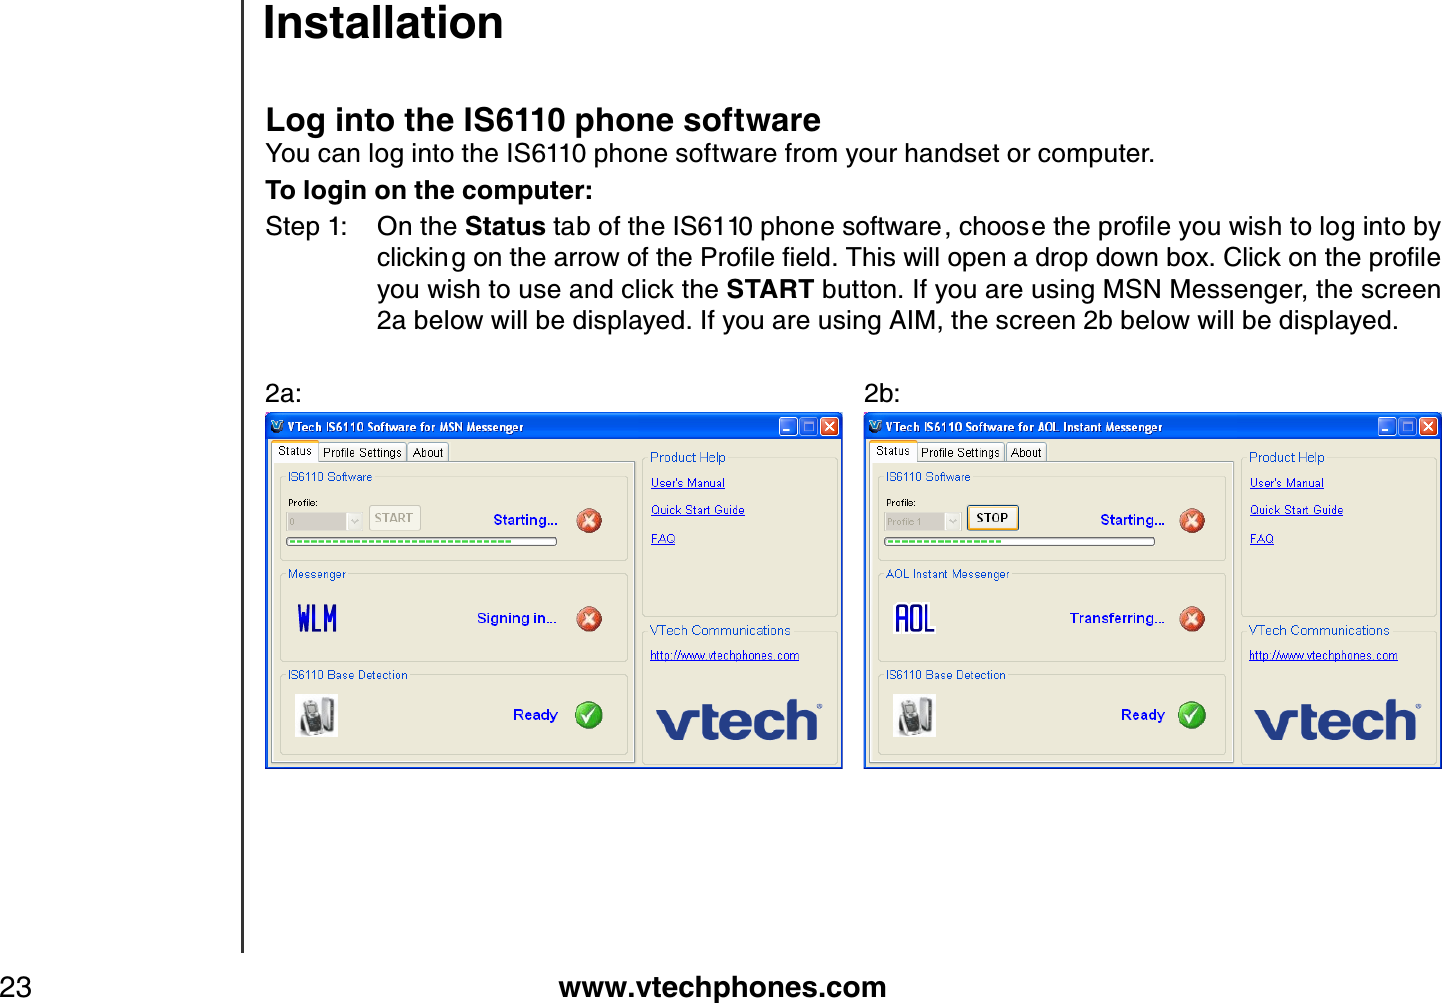 www.vtechphones.com23Log into the IS6110 phone softwareYou can log into the IS6110 phone software from your handset or computer. To login on the computer:Step 1: On the StatusVCDQHVJG+5RJQPGUQHVYCTGEJQQUGVJGRTQſNG[QWYKUJVQNQIKPVQD[ENKEMKPIQPVJGCTTQYQHVJG2TQſNGſGNF6JKUYKNNQRGPCFTQRFQYPDQZ%NKEMQPVJGRTQſNGyou wish to use and click the START button. If you are using MSN Messenger, the screen 2a below will be displayed. If you are using AIM, the screen 2b below will be displayed.2a:             2b:   Installation